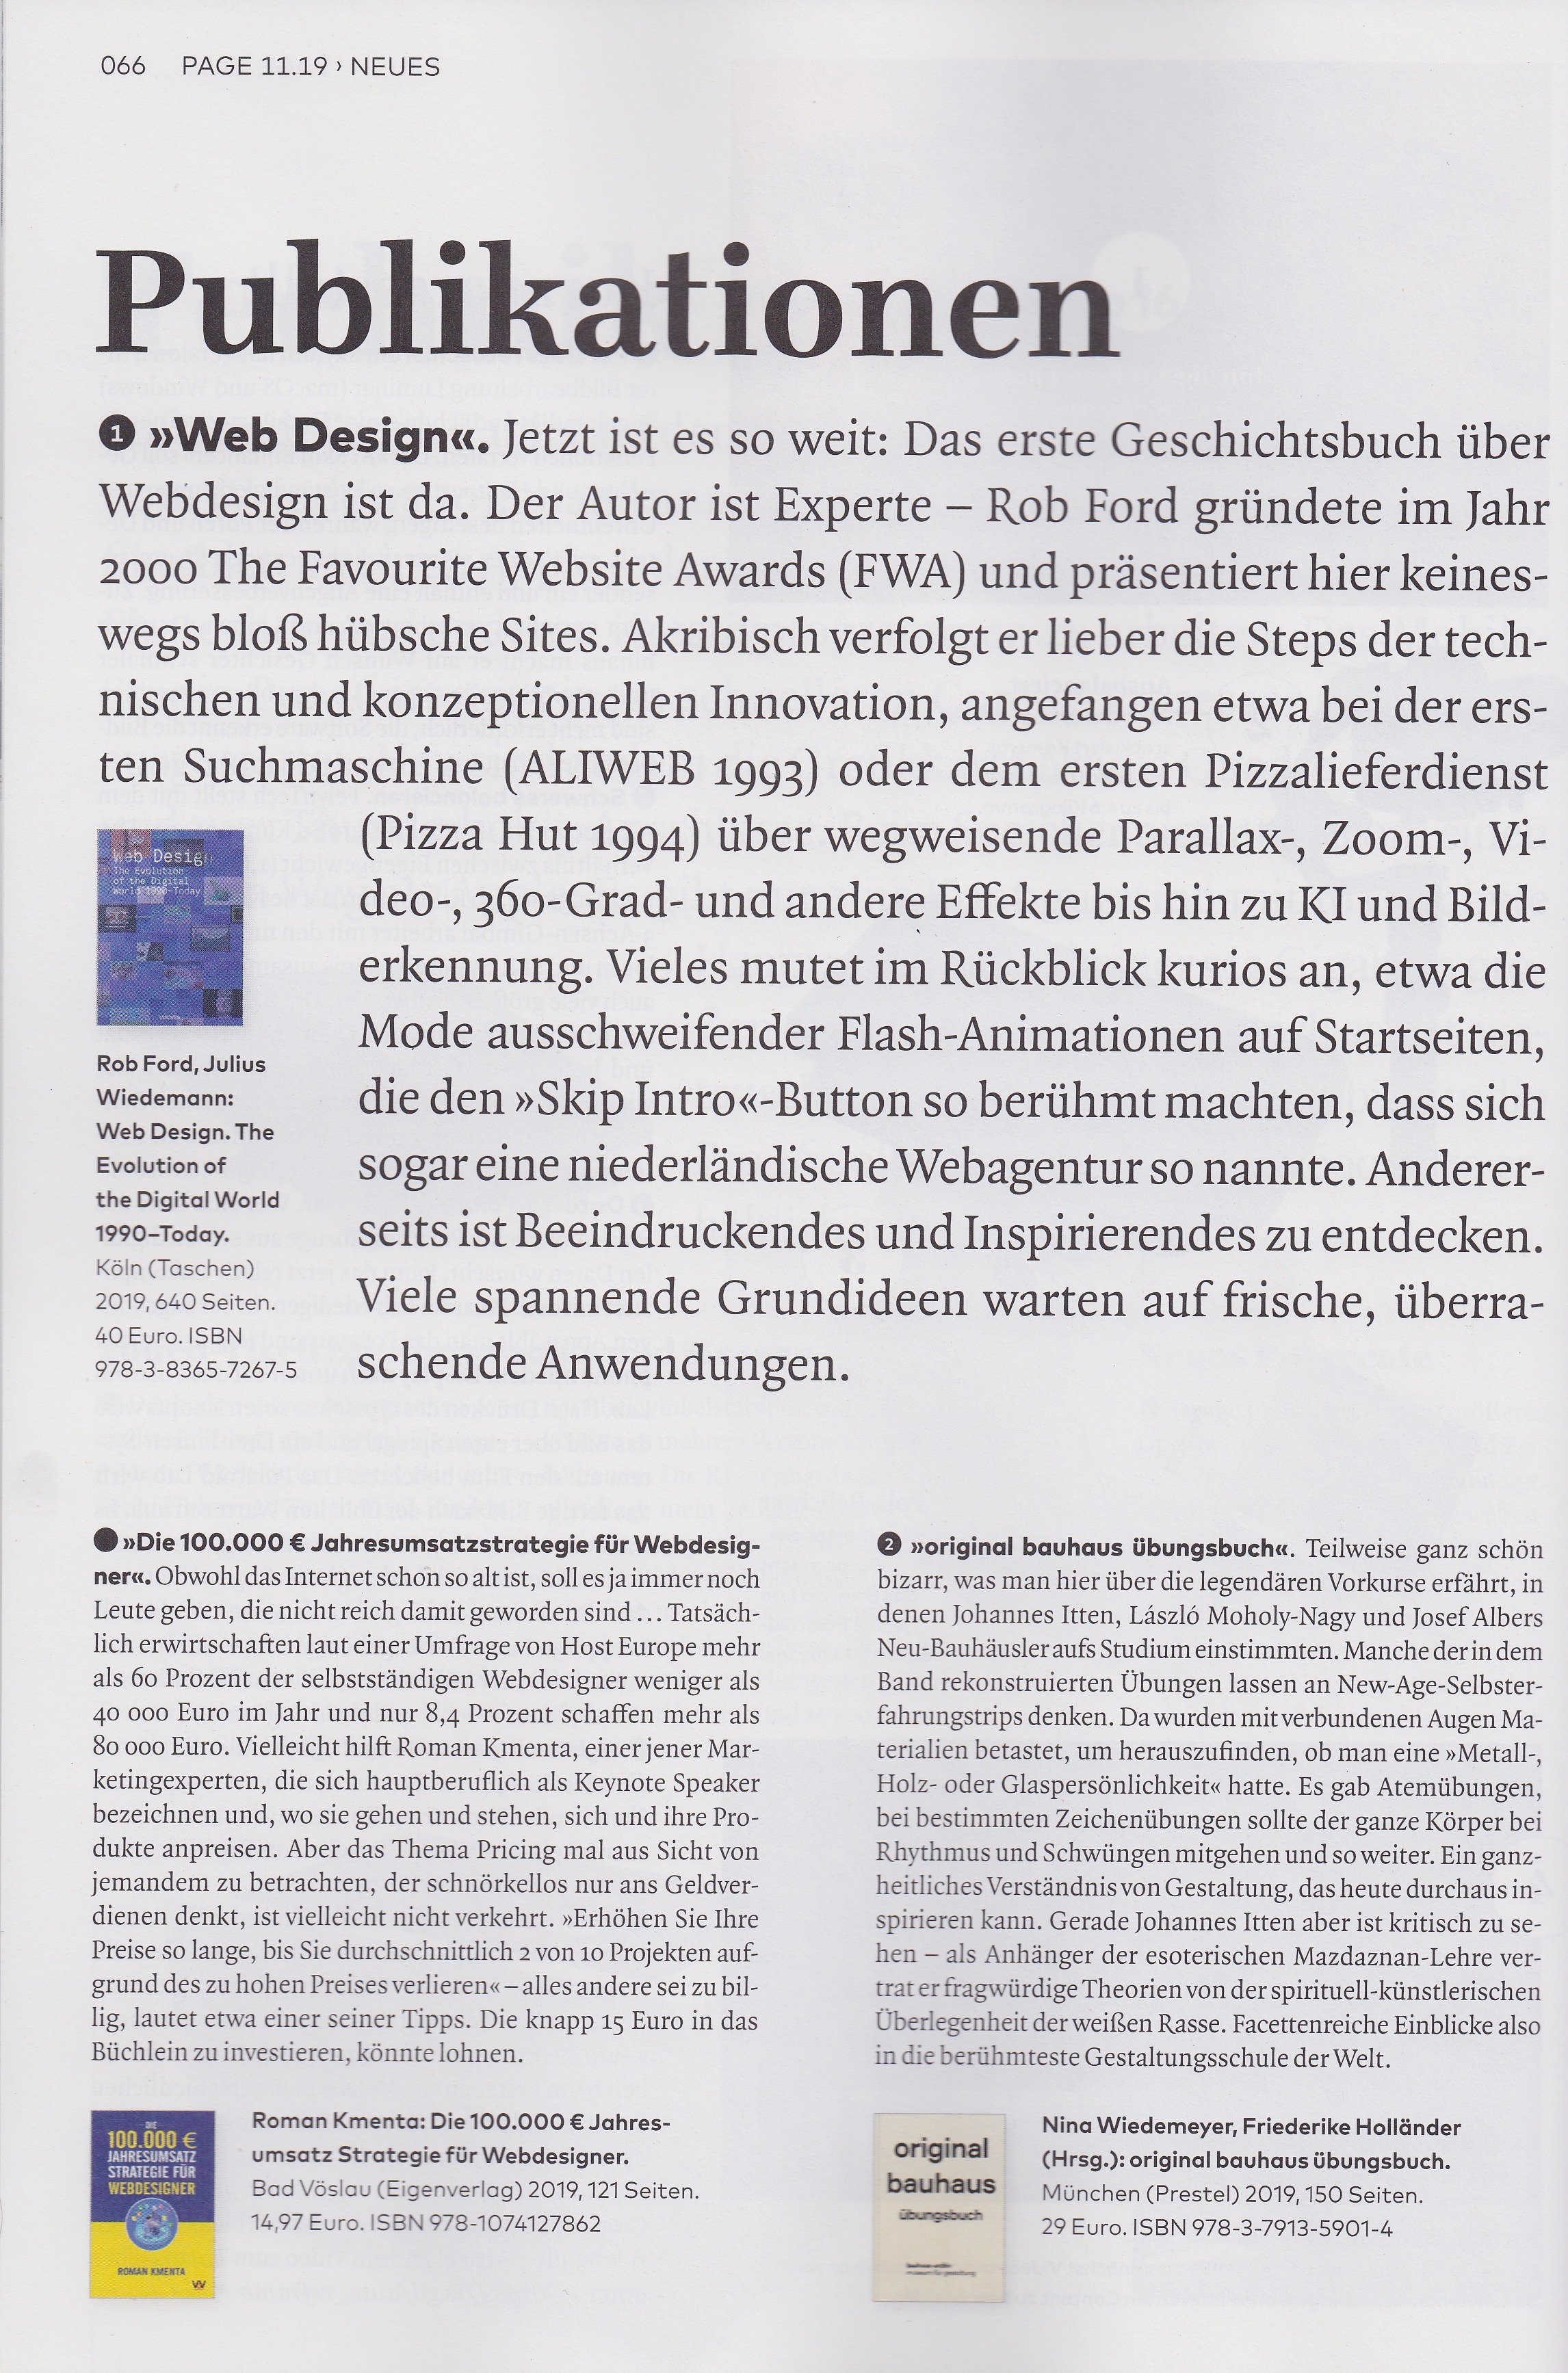 "Die 100.000 Euro Jahresumsatzstrategie für Webdesigner" - Buchtipp bei PAGE - Ausgabe 09/2019 - Autor Roman Kmenta